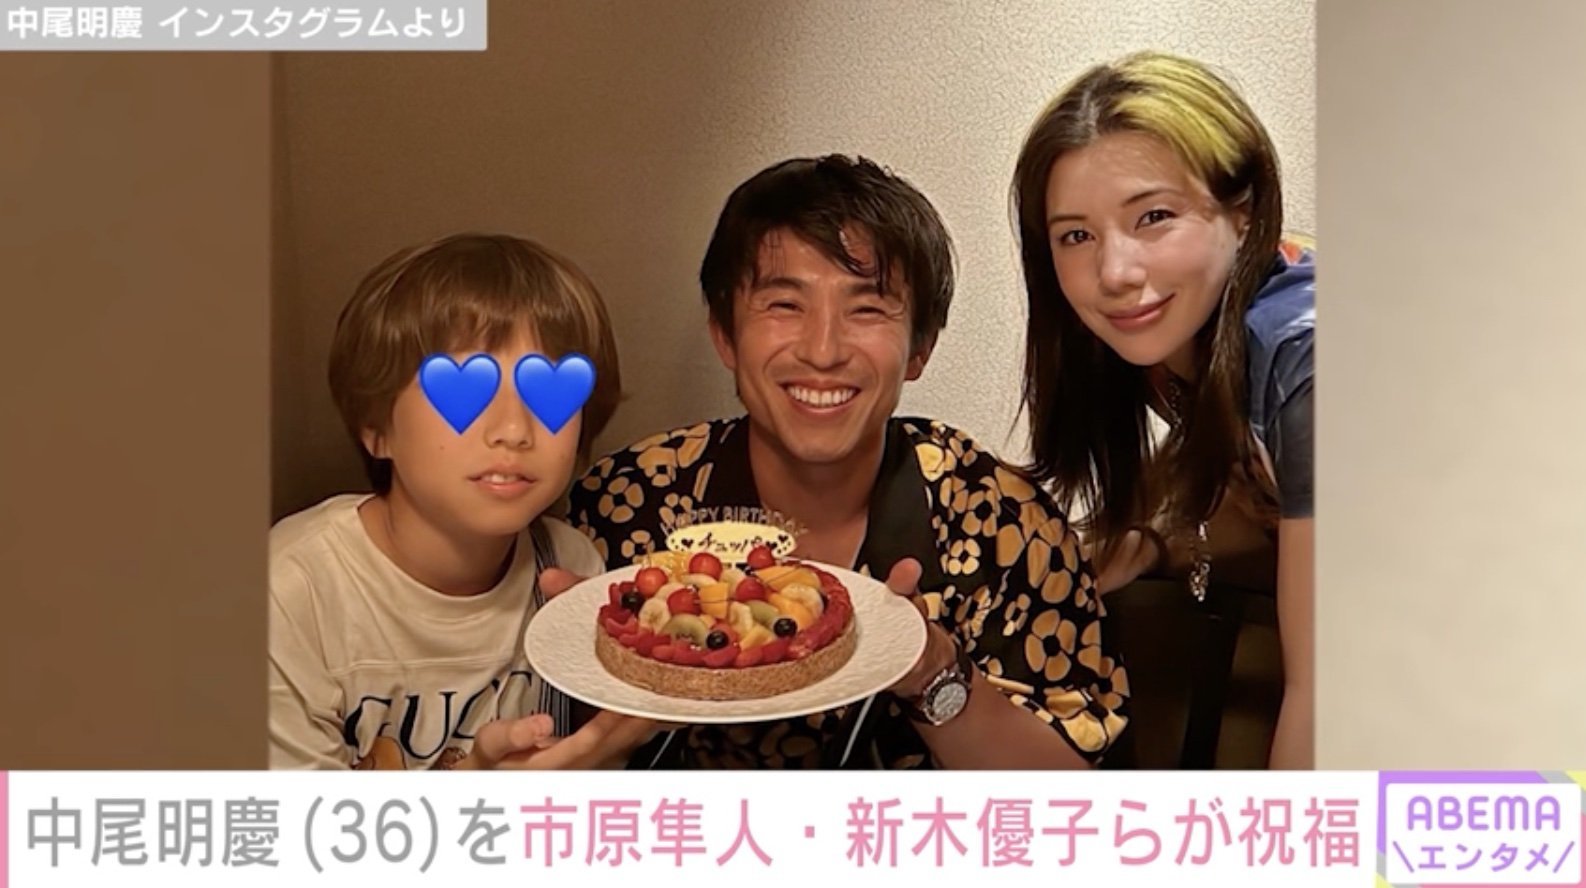 中尾明慶、36歳誕生日の家族写真を公開 w-inds橘慶太、市原隼人らも祝福(ABEMA TIMES)